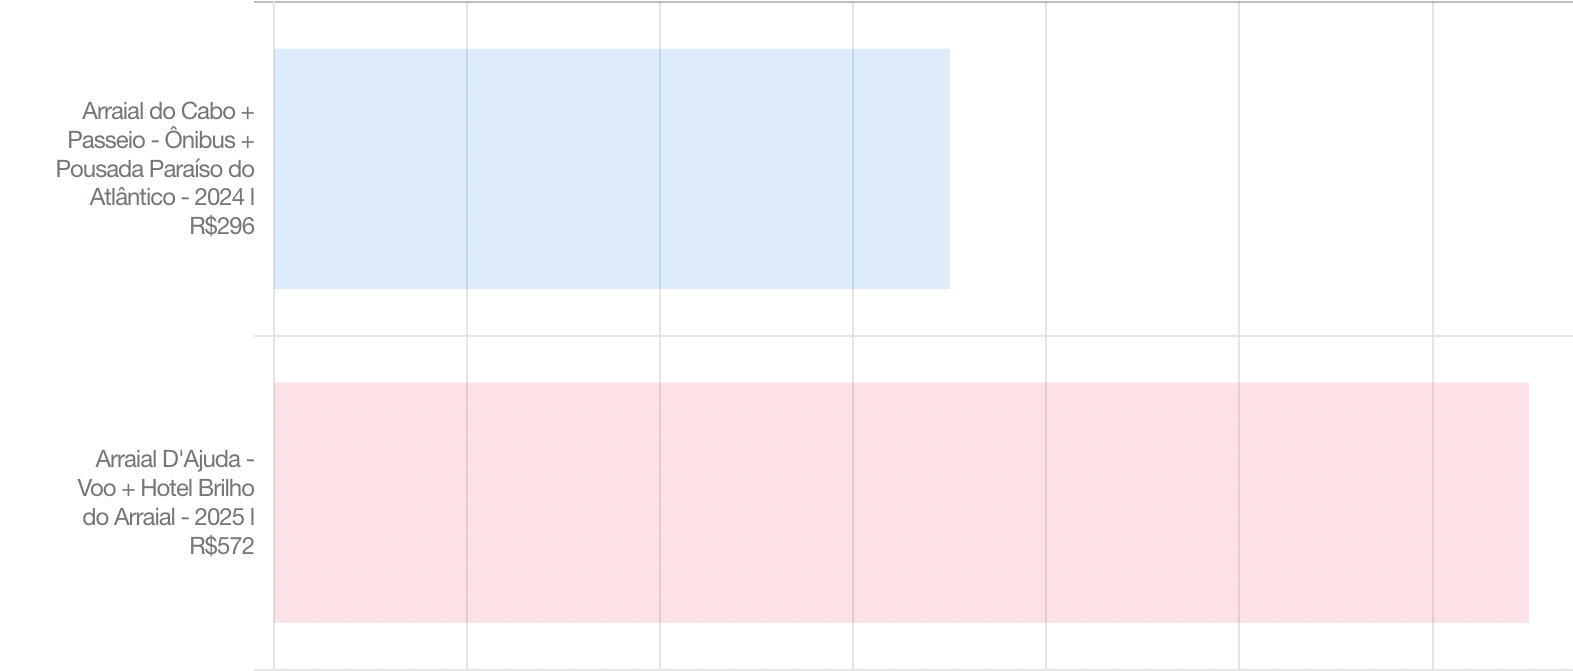 
A imagem mostra um gráfico com duas barras, indicando dois pacotes de viagens diferentes com suas respectivas datas e preços. A barra superior, em azul claro, representa uma viagem para "Arraial do Cabo + Passeio - Ônibus + Pousada Paraíso do Atlântico - 2024" com um preço de "R$296". A barra inferior, em rosa claro, mostra uma viagem para "Arraial D'Ajuda - Voo + Hotel Brilho do Arraial - 2025" custando "R$572". O gráfico mostra o pacote Arraial D'Ajuda como o pacote escohido na votação.